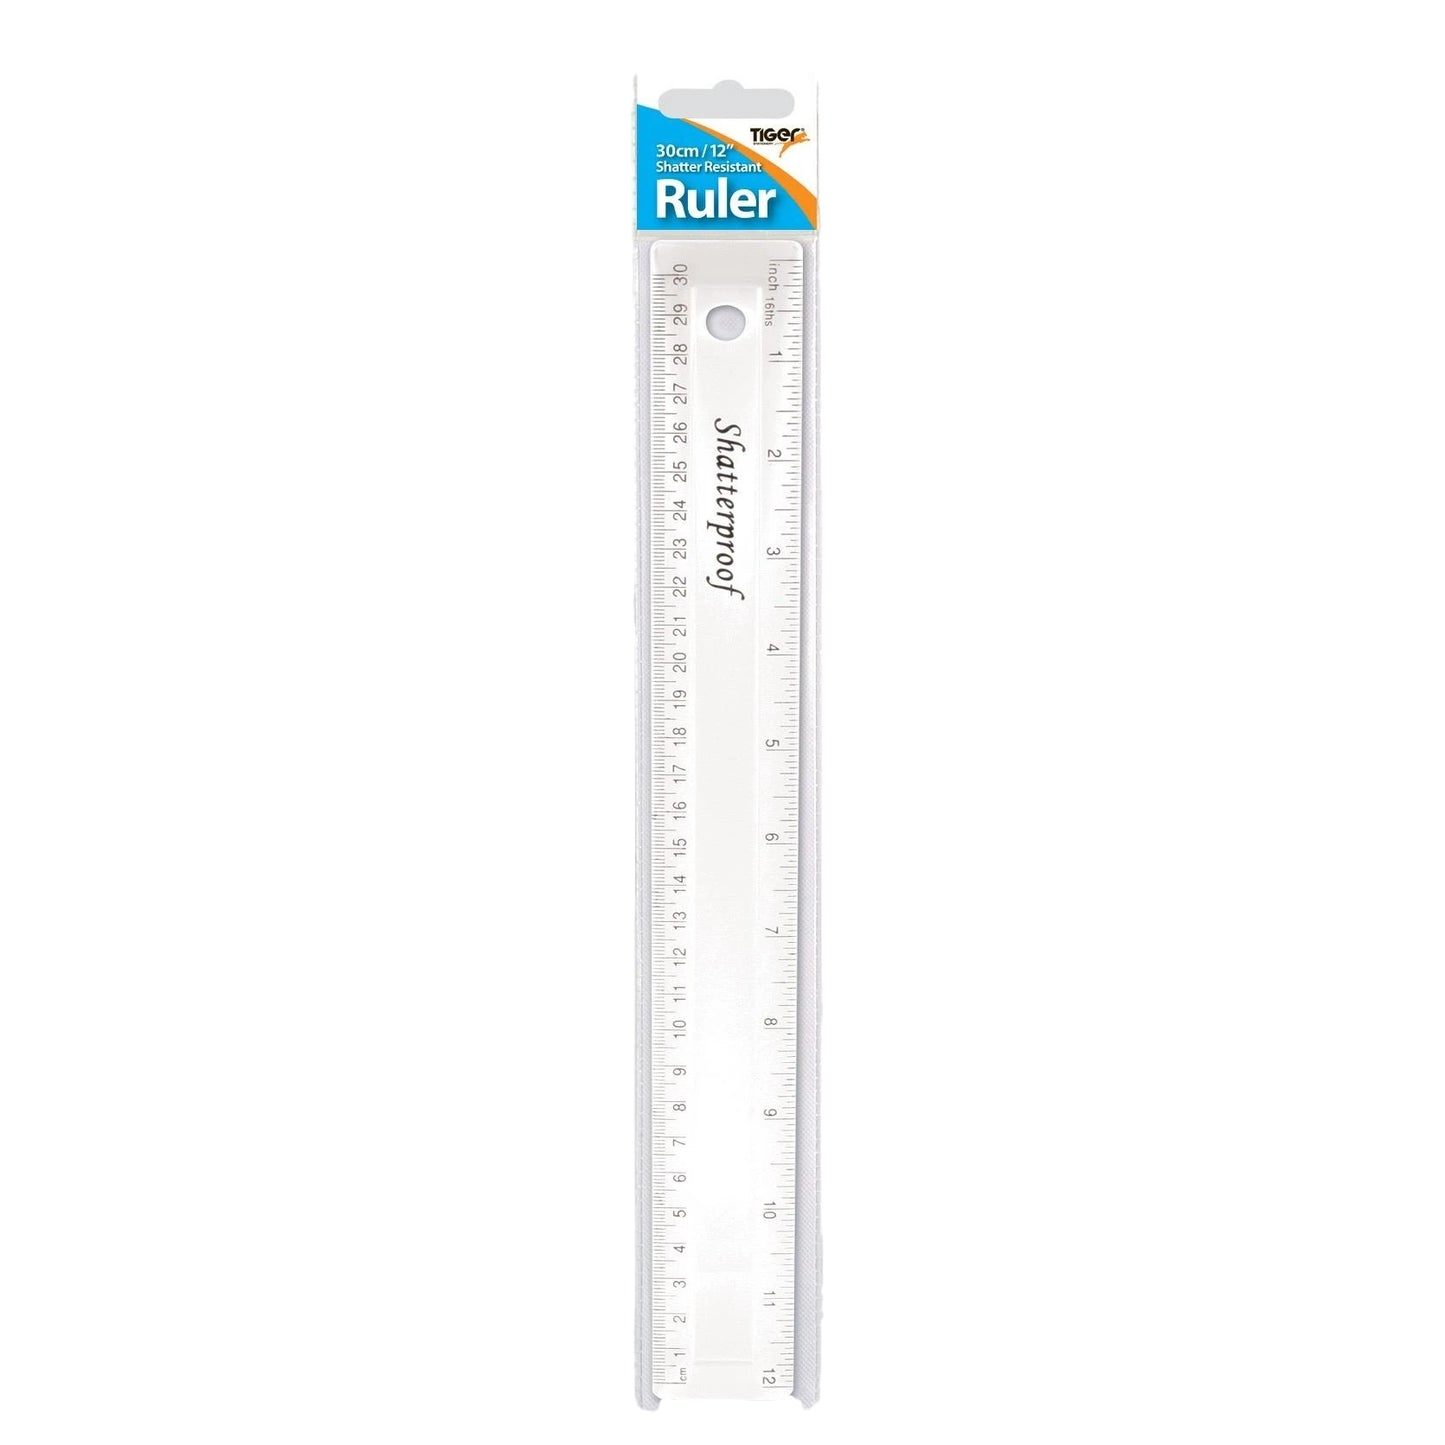 30cm Shatter Resistant Ruler - Clear